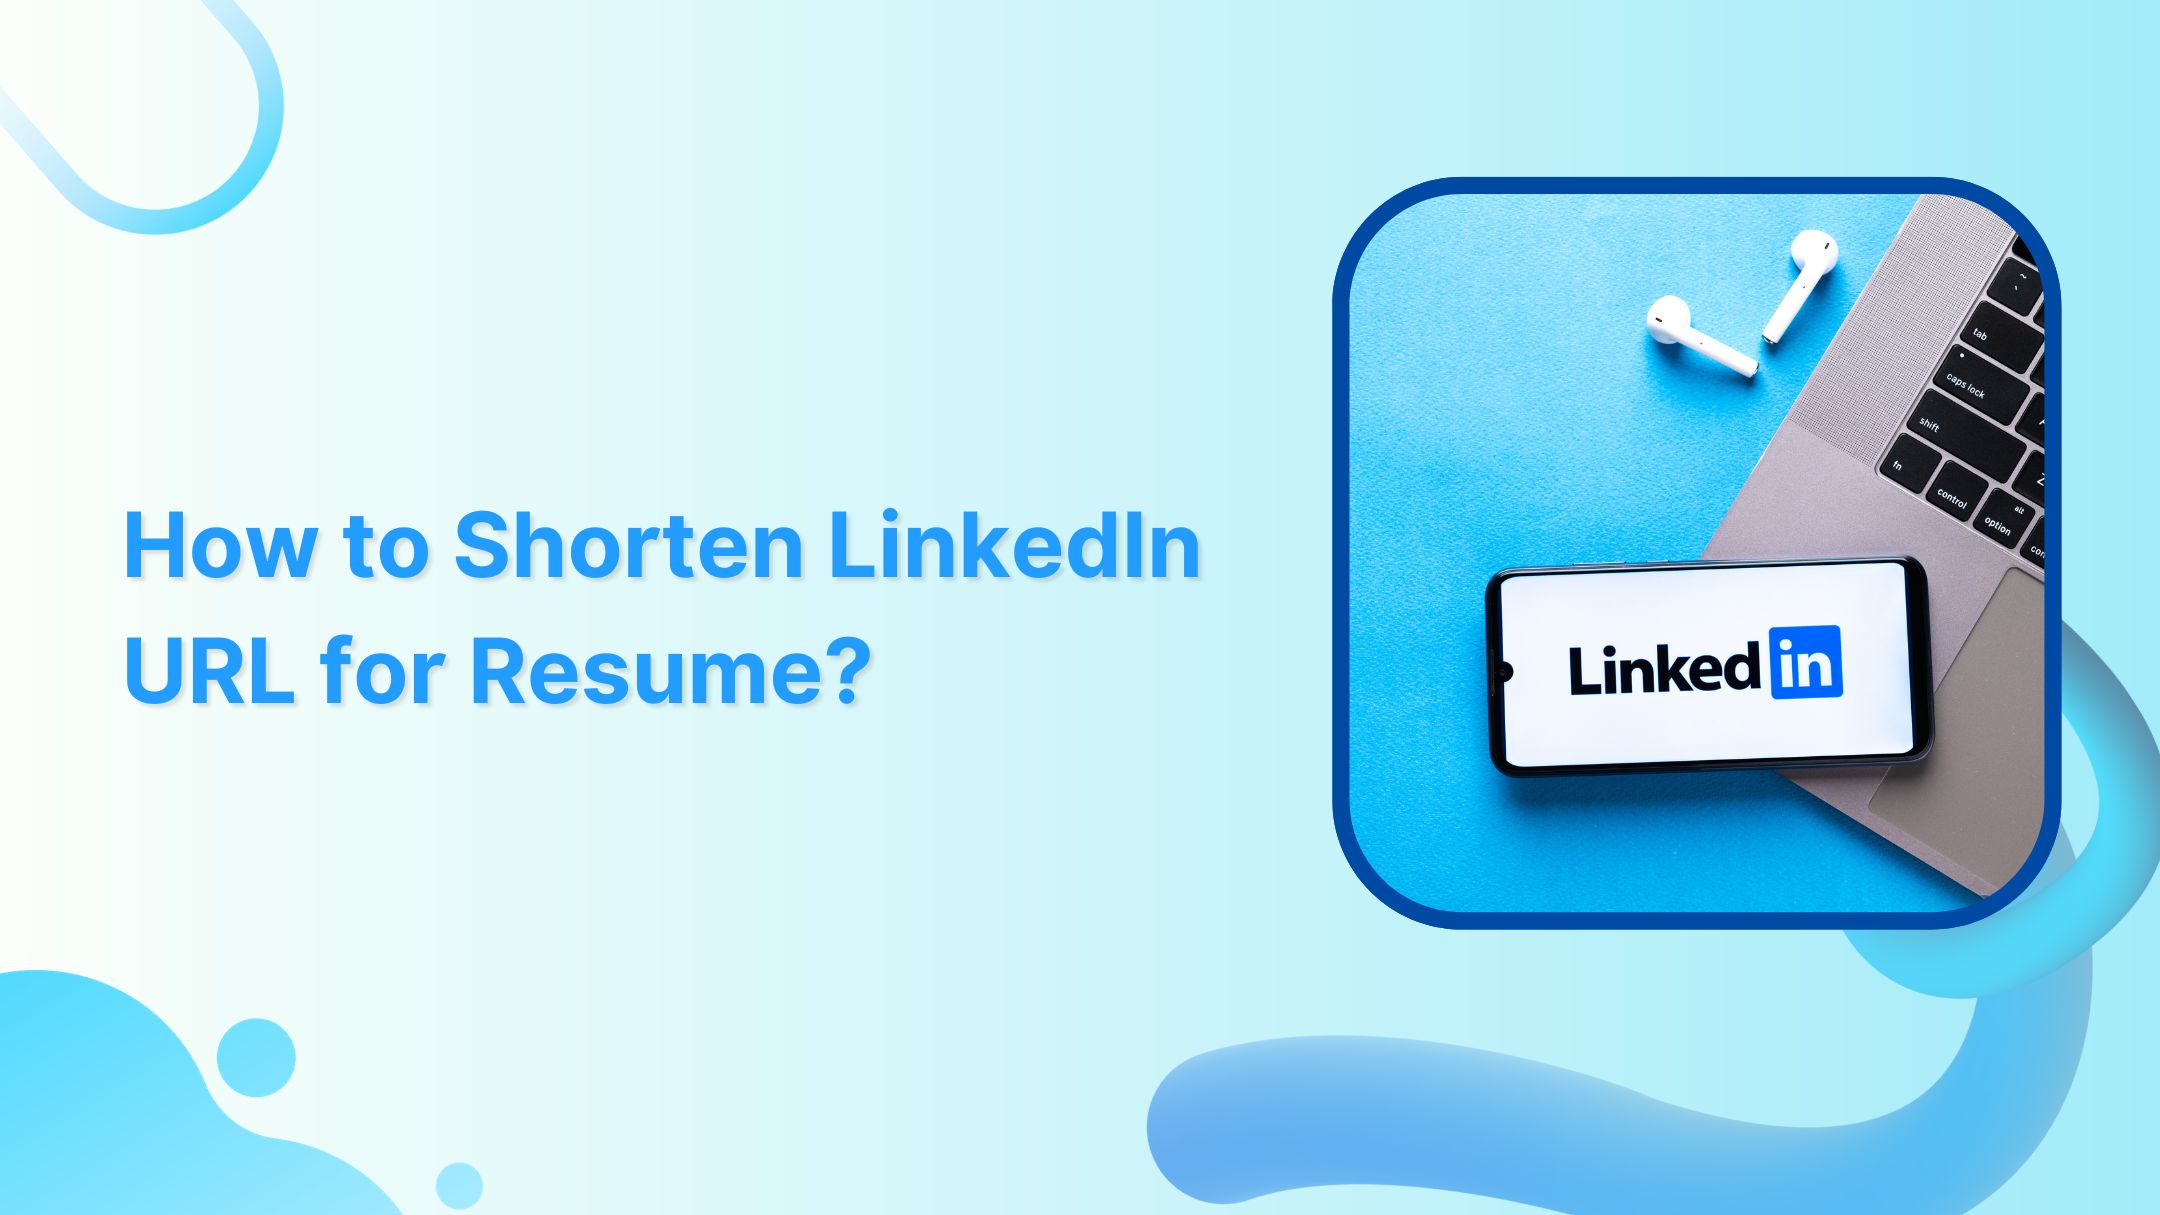 How to Shorten LinkedIn URL for Resume?